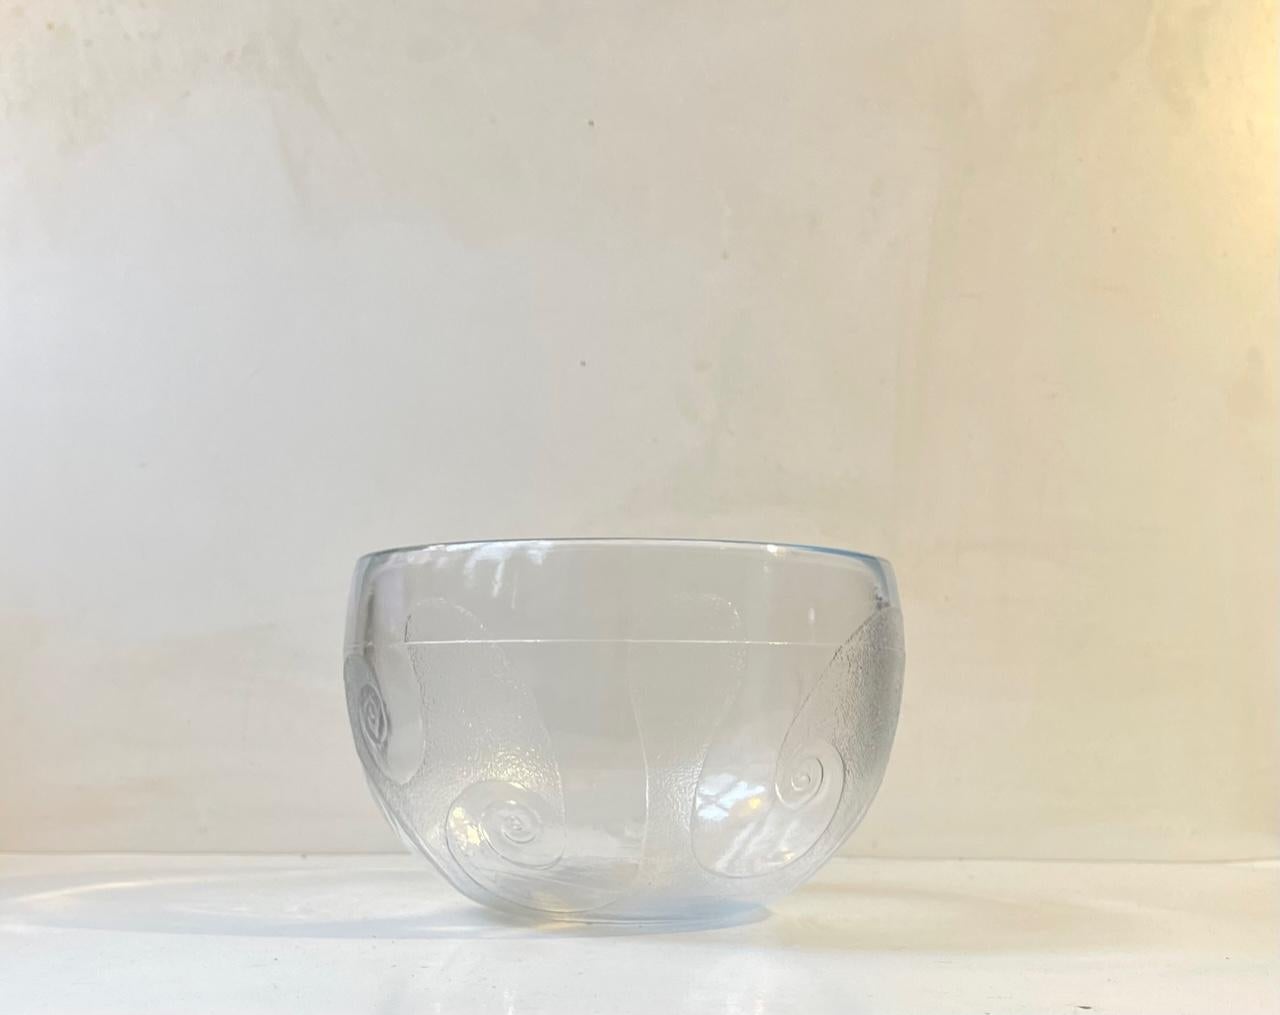 Ein seltener Tafelaufsatz oder eine Salatschüssel aus gegossenem, zentrifugiertem Klarglas. Dekor: Tentakel oder Wellen. Sie heißt Glastronomi (Zusammenstellung von Glas und Astronomie) und wurde 1976 von Michael Bang entworfen und bis 1977 bei